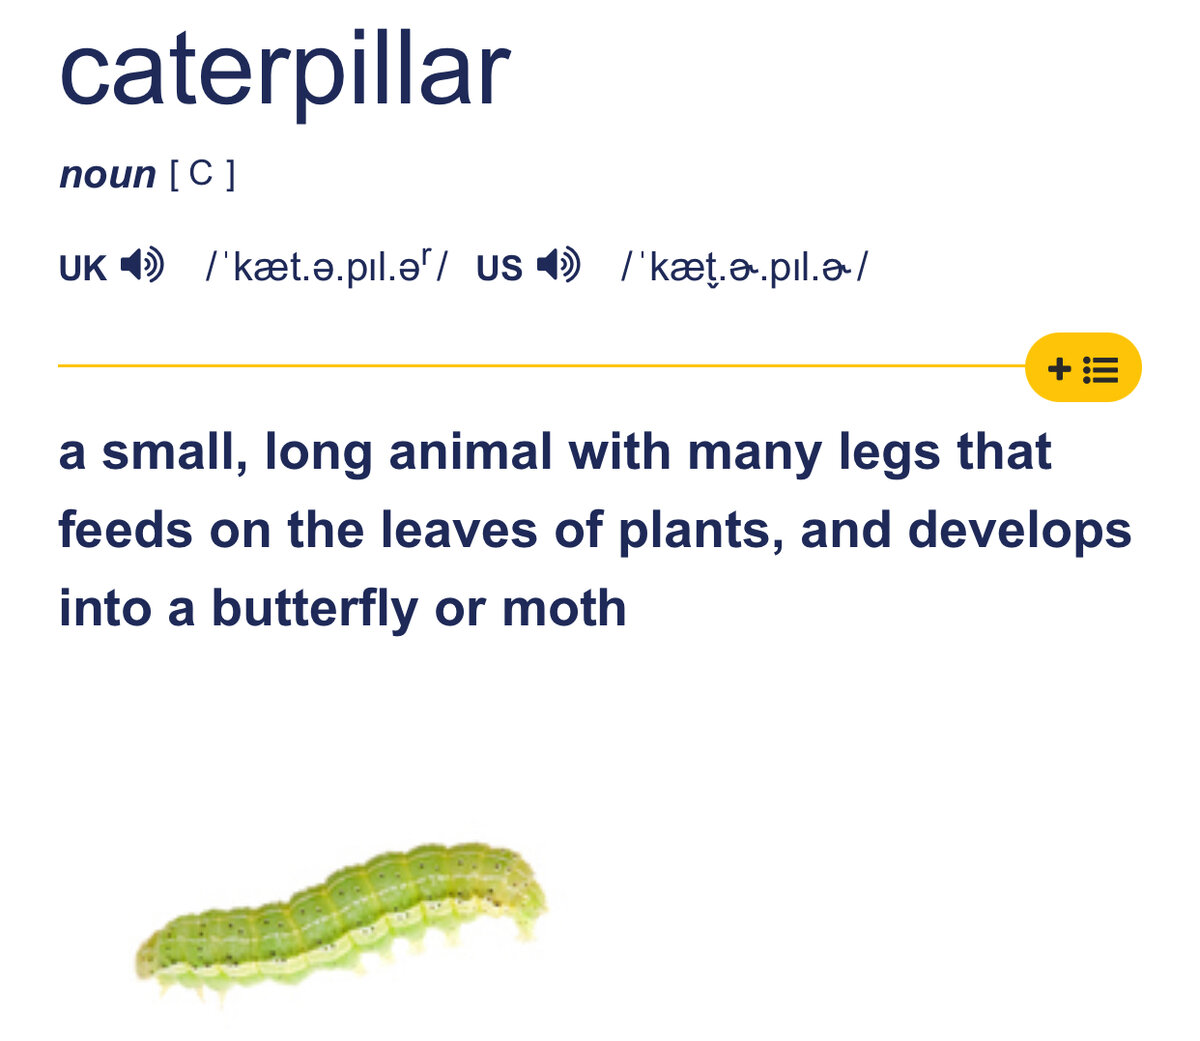 Как переводятся названия известных брендов Caterpillar, Amazon и Ritter Sport?